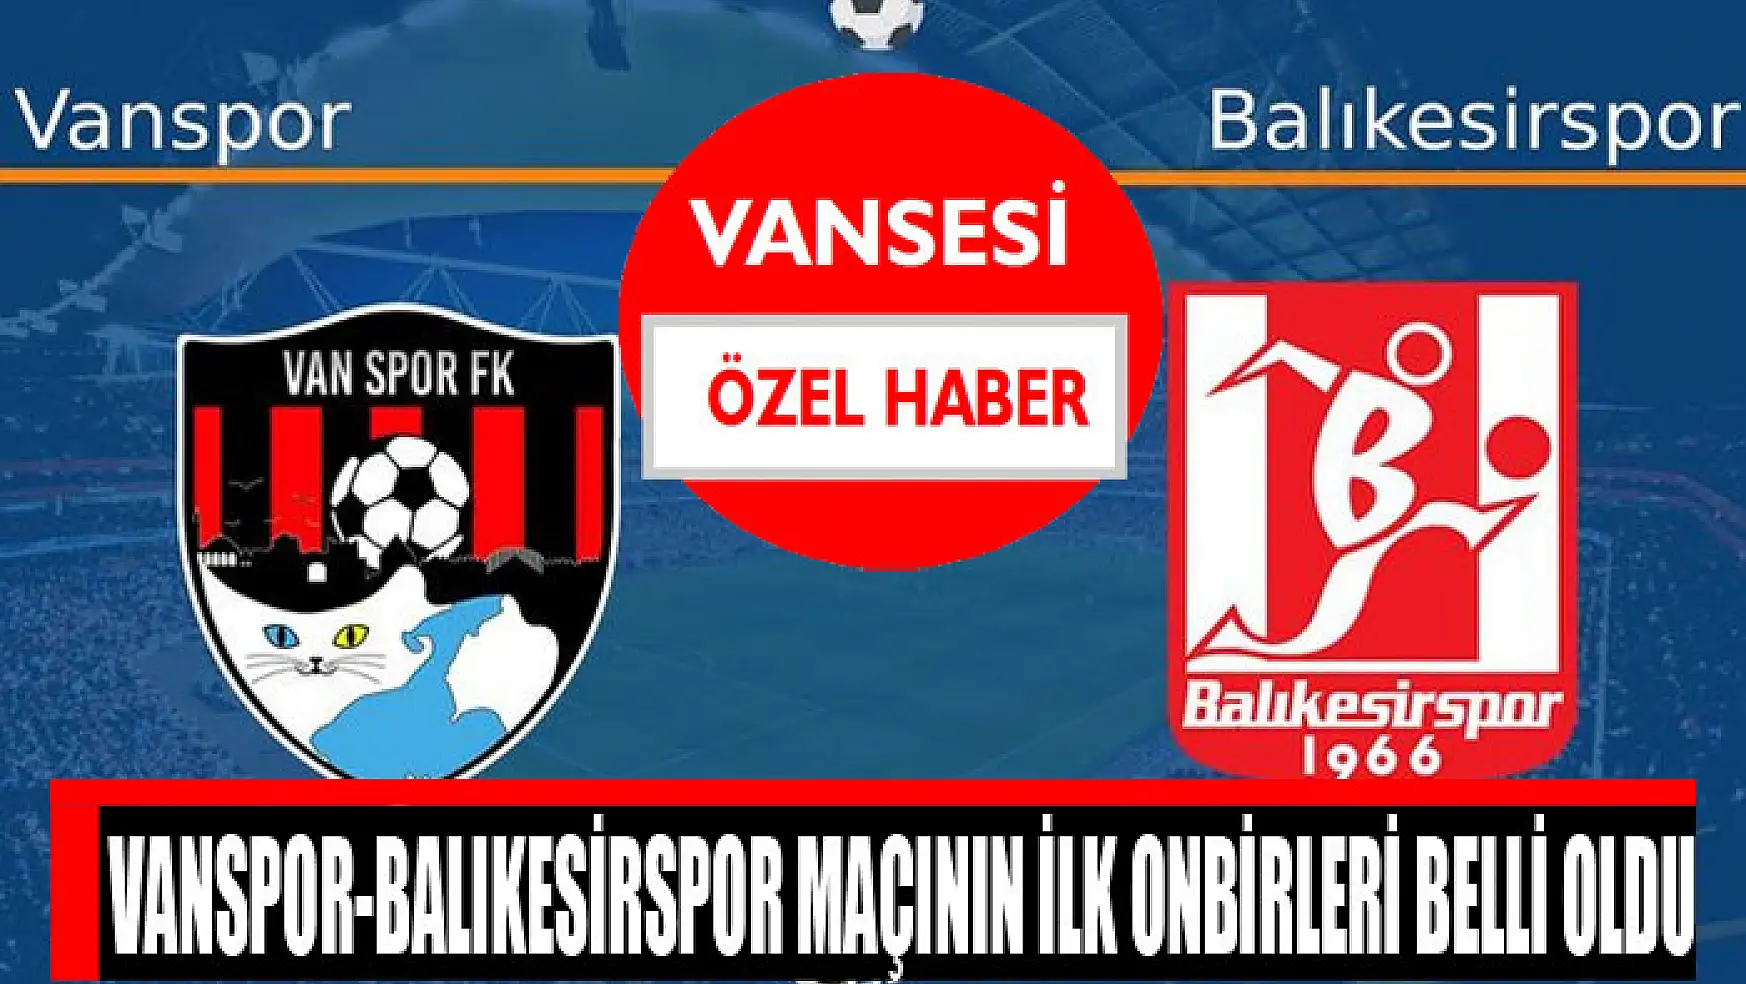 Vanspor-Balıkesirspor maçının ilk onbirleri belli oldu